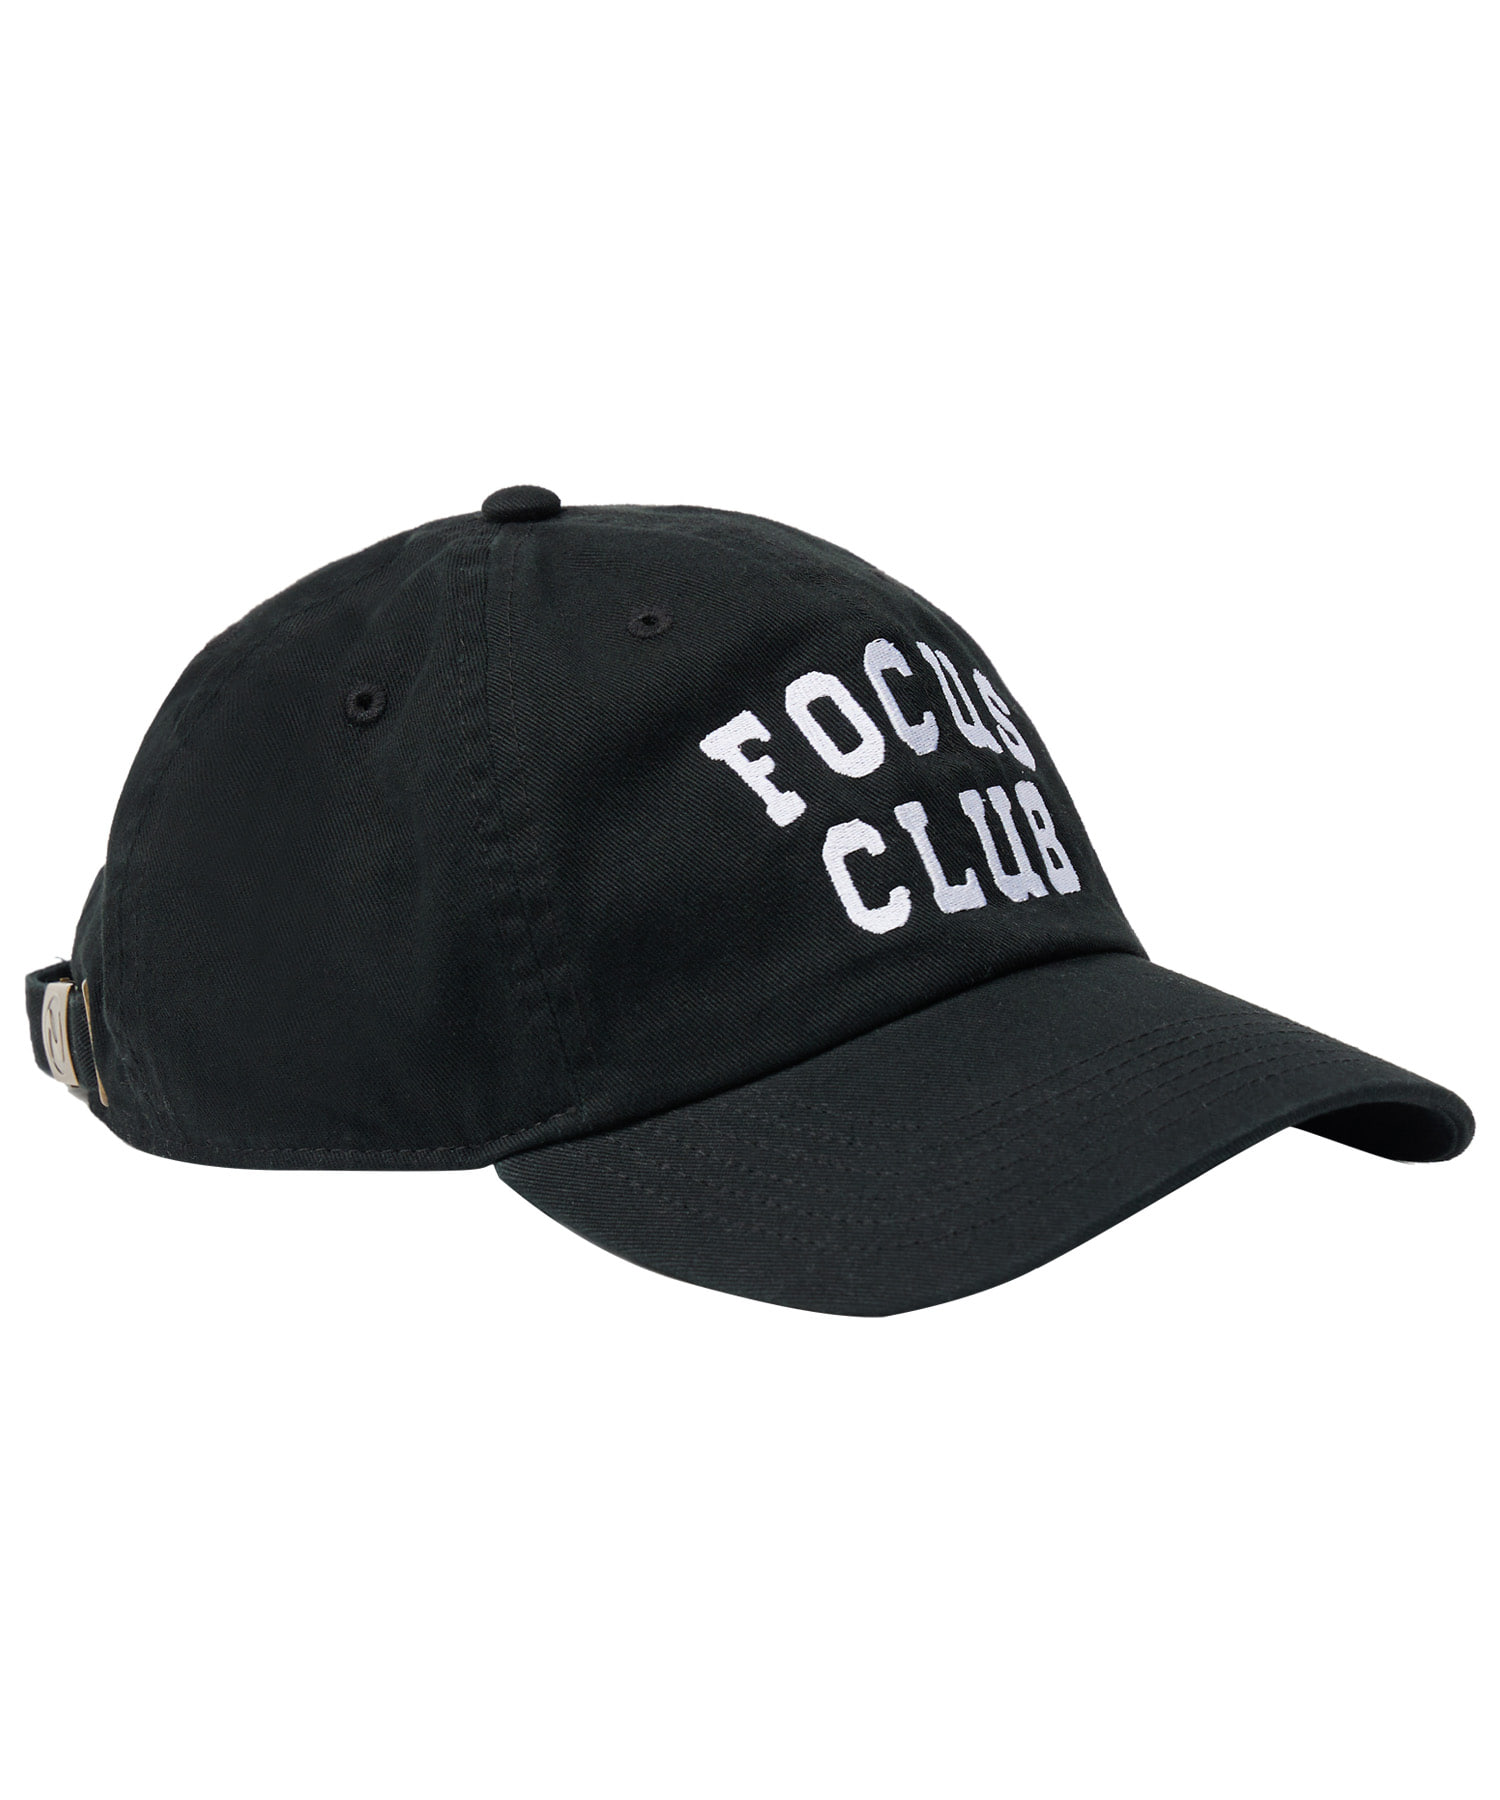 라이프 아카이브 FOCUS CLUB BALL CAP_BLACK 라이프,LIFE, LIFE ARCHIVE,볼캡,라이프볼캡,ballcap